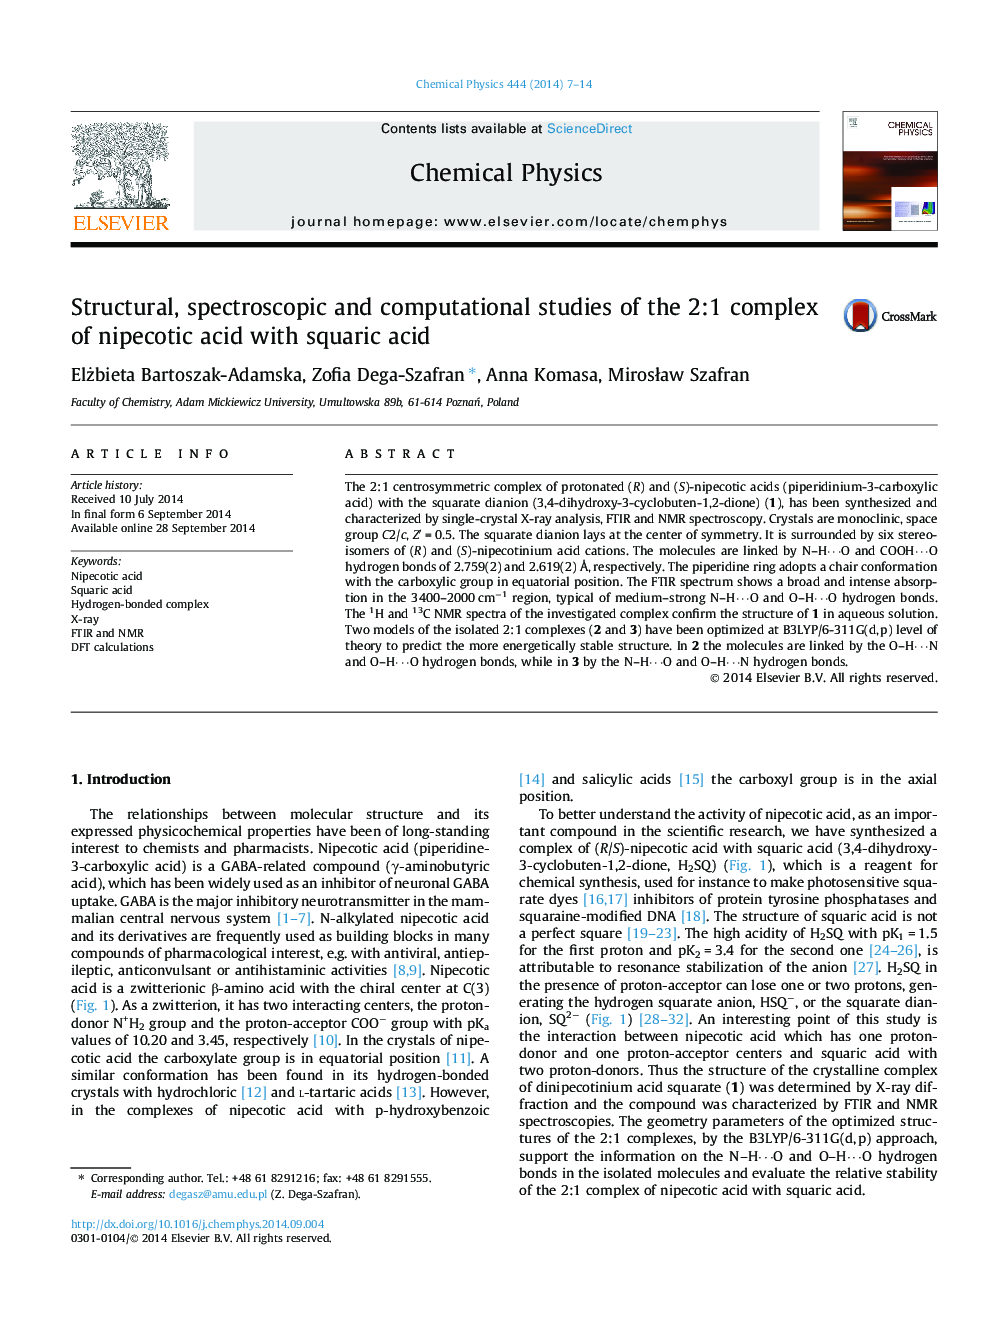 مطالعات ساختاری، اسپکتروسکوپی و محاسباتی مجموعه ای از اسید نایپاکوتیک 2: 1 با اسکوریاک اسید 